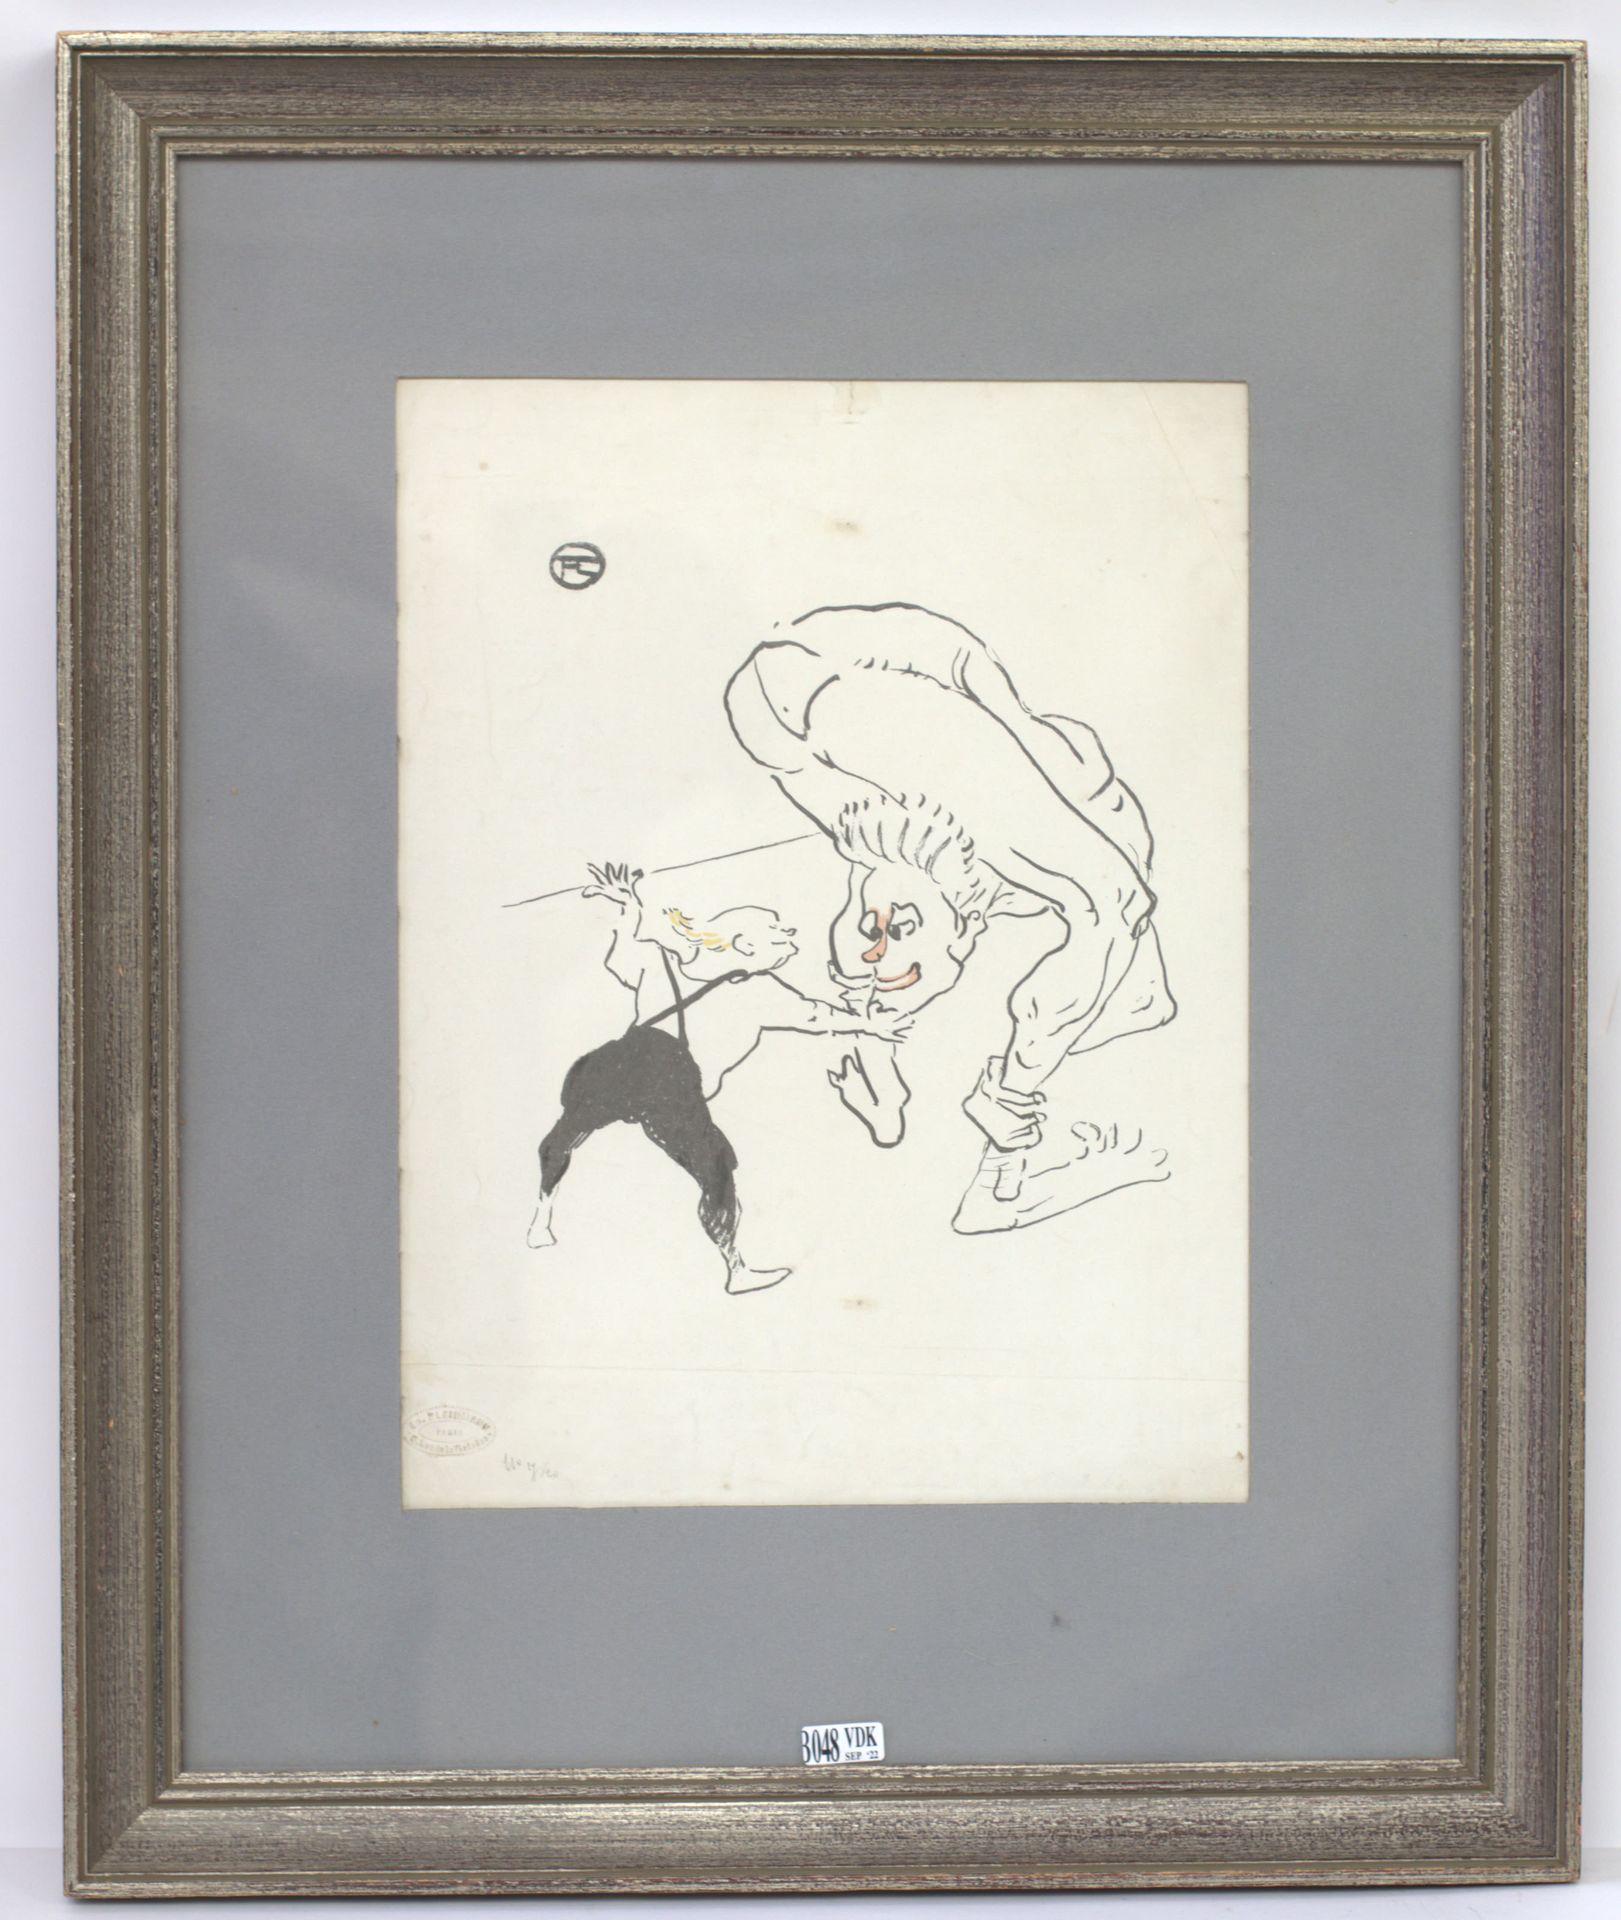 Null 纸上石版画《Les frères Marcx》。

 1895年12月的 "Le rire "中转载了克莱因曼第17/20号版本的邮票_x000D_。&hellip;